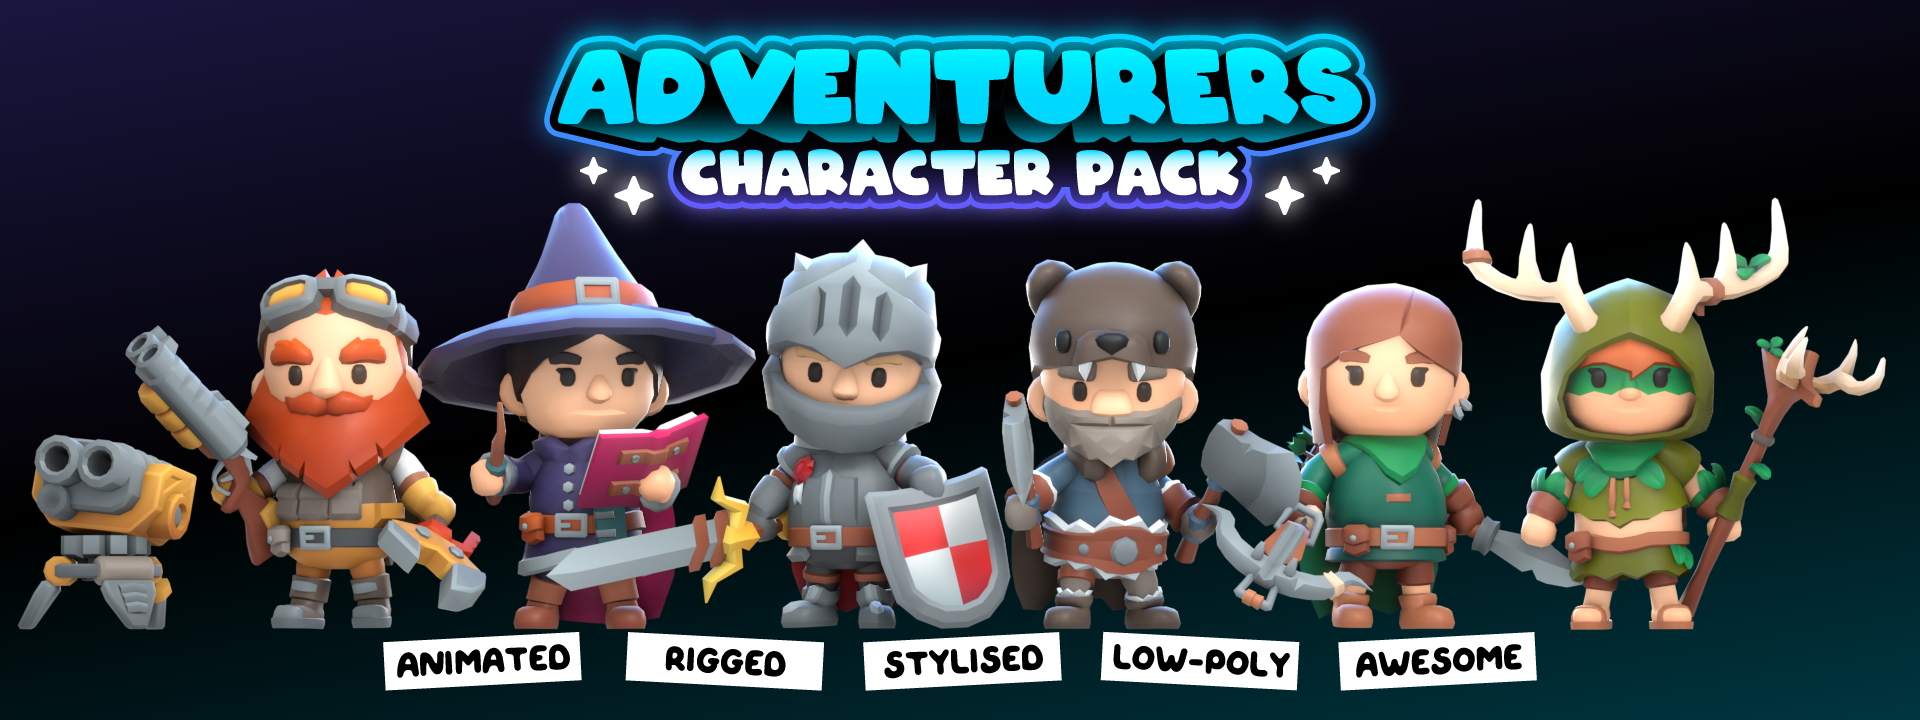 KayKit - Character Pack : Adventurers